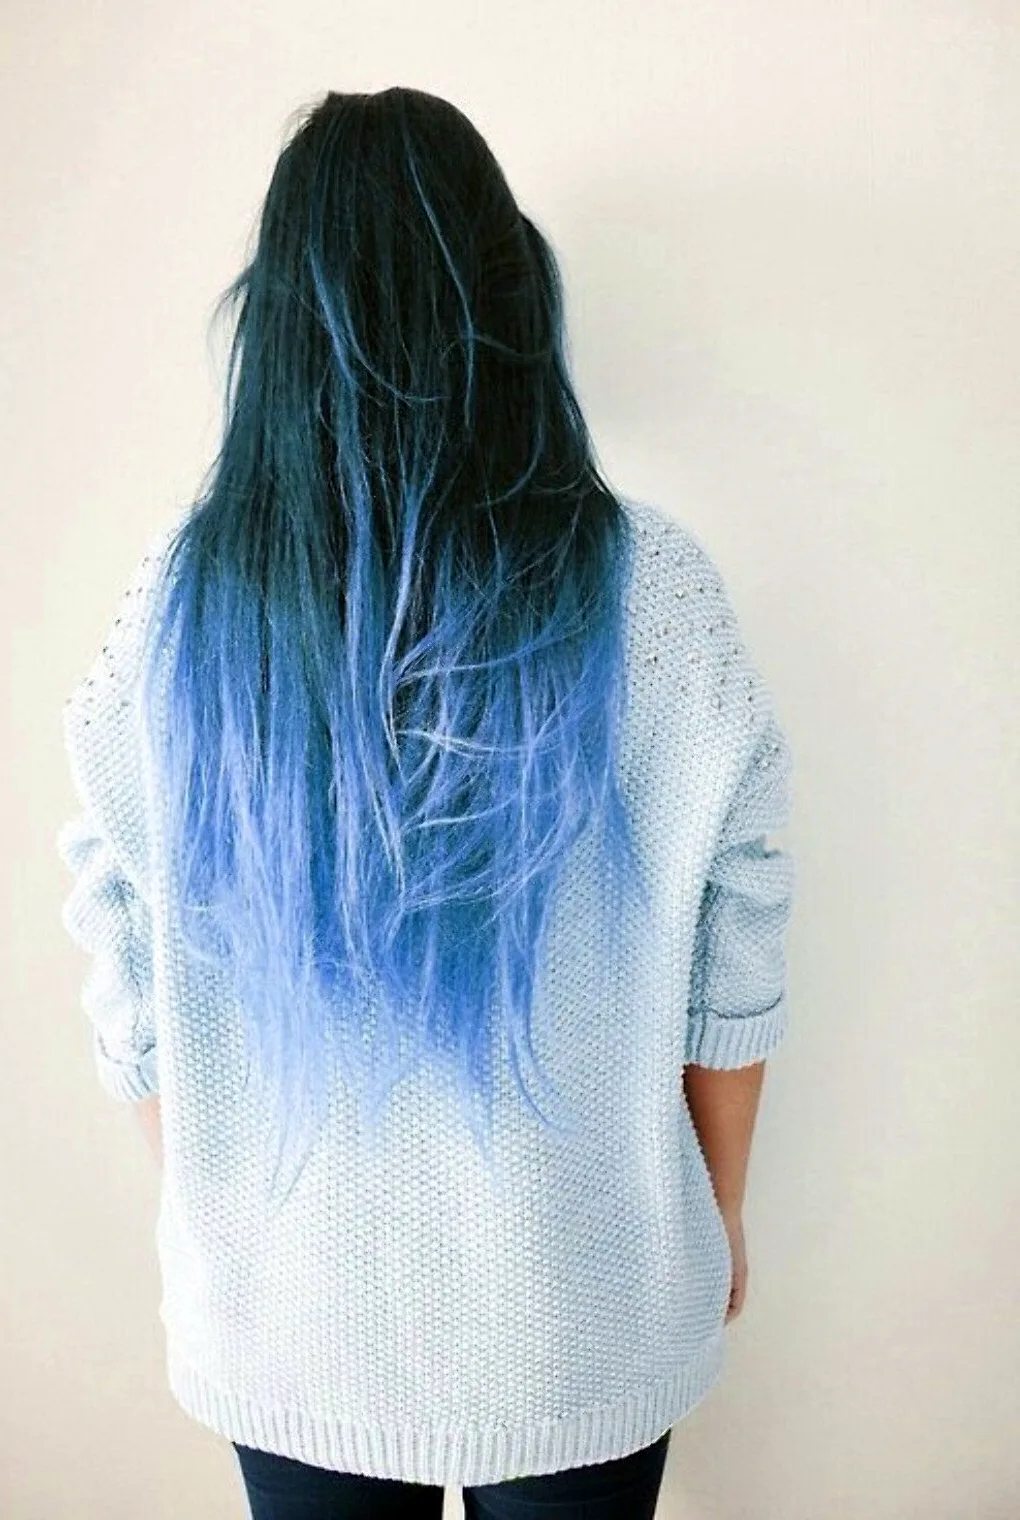 Русые волосы с синими кончиками